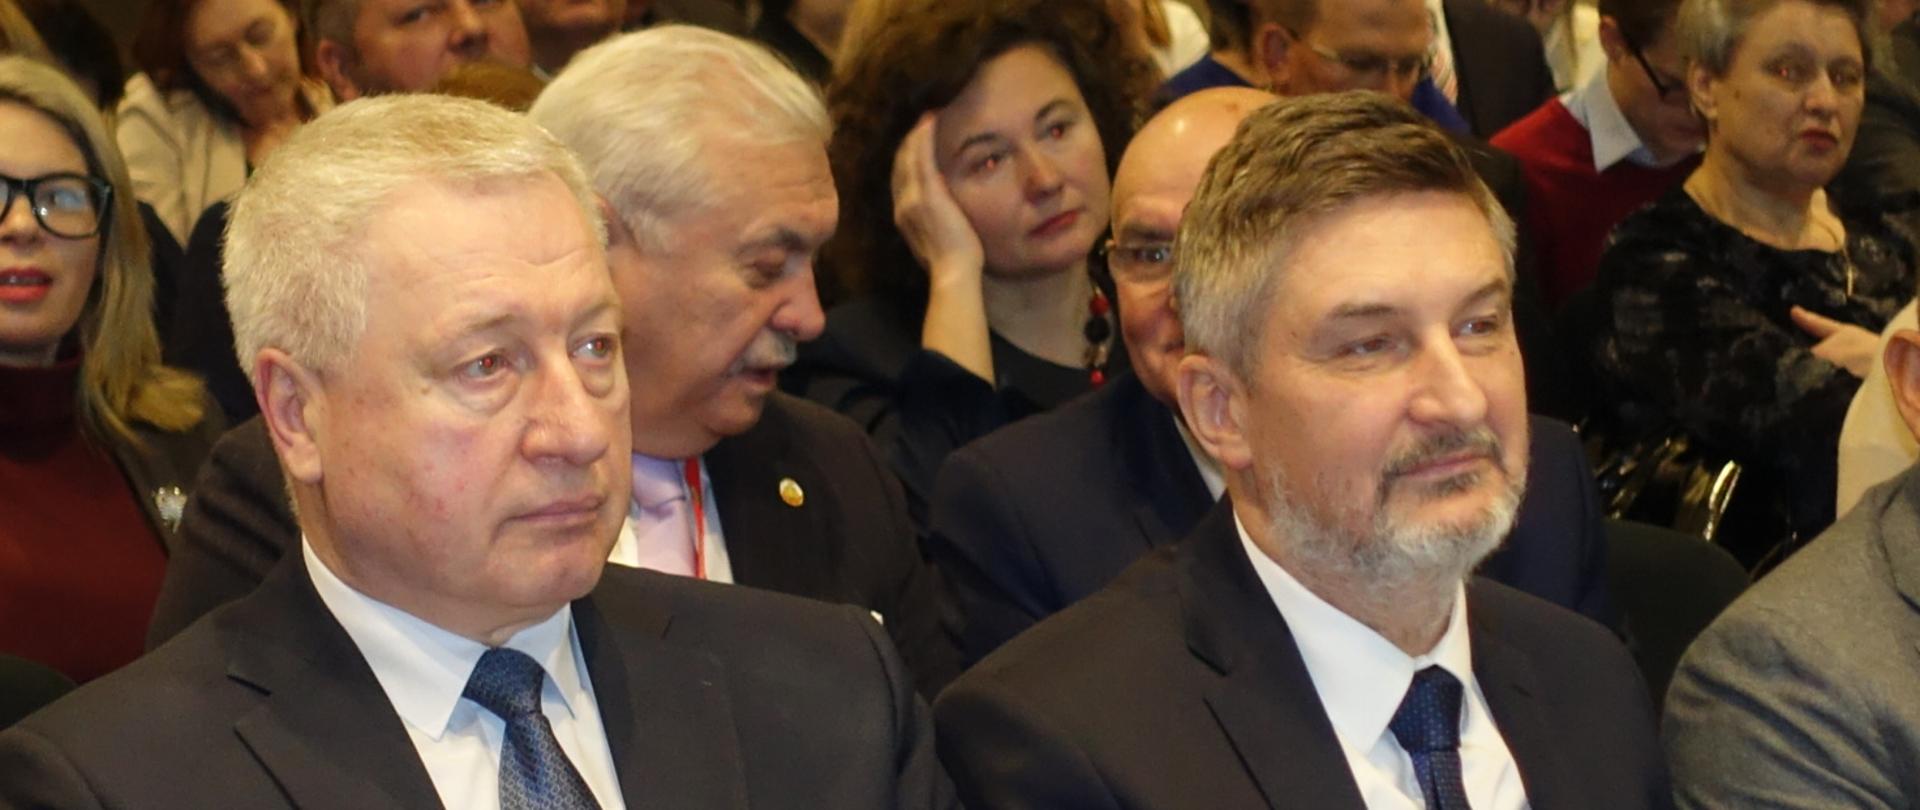 Forum Polskiej pomocy na Białorusi w 2019 